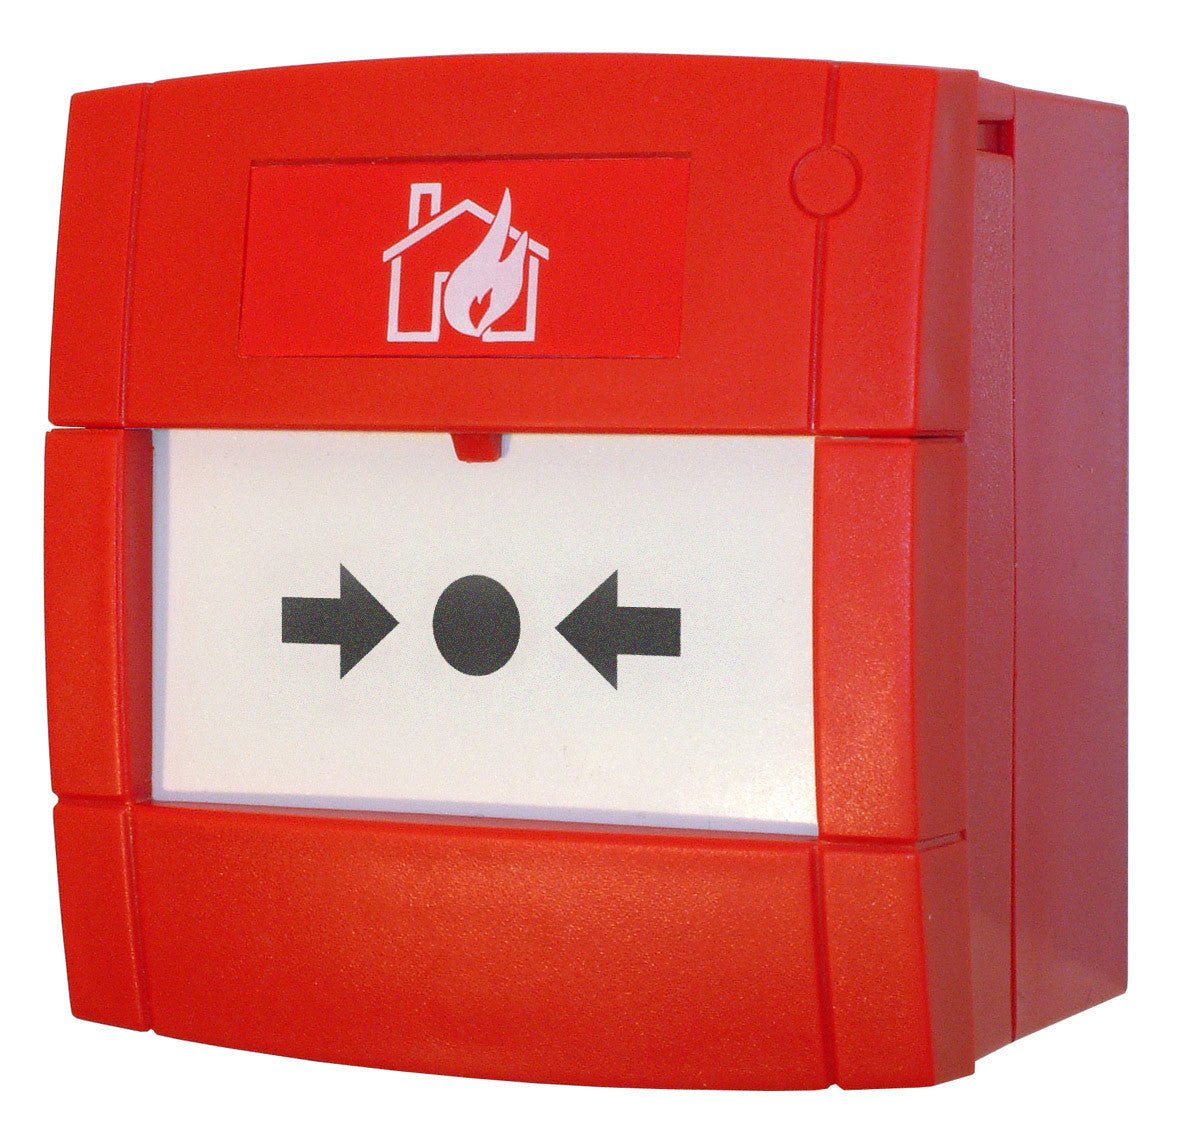 2501233 FireClass Manual Call Point Resettable Element & Backbox - Fire Trade Supplies